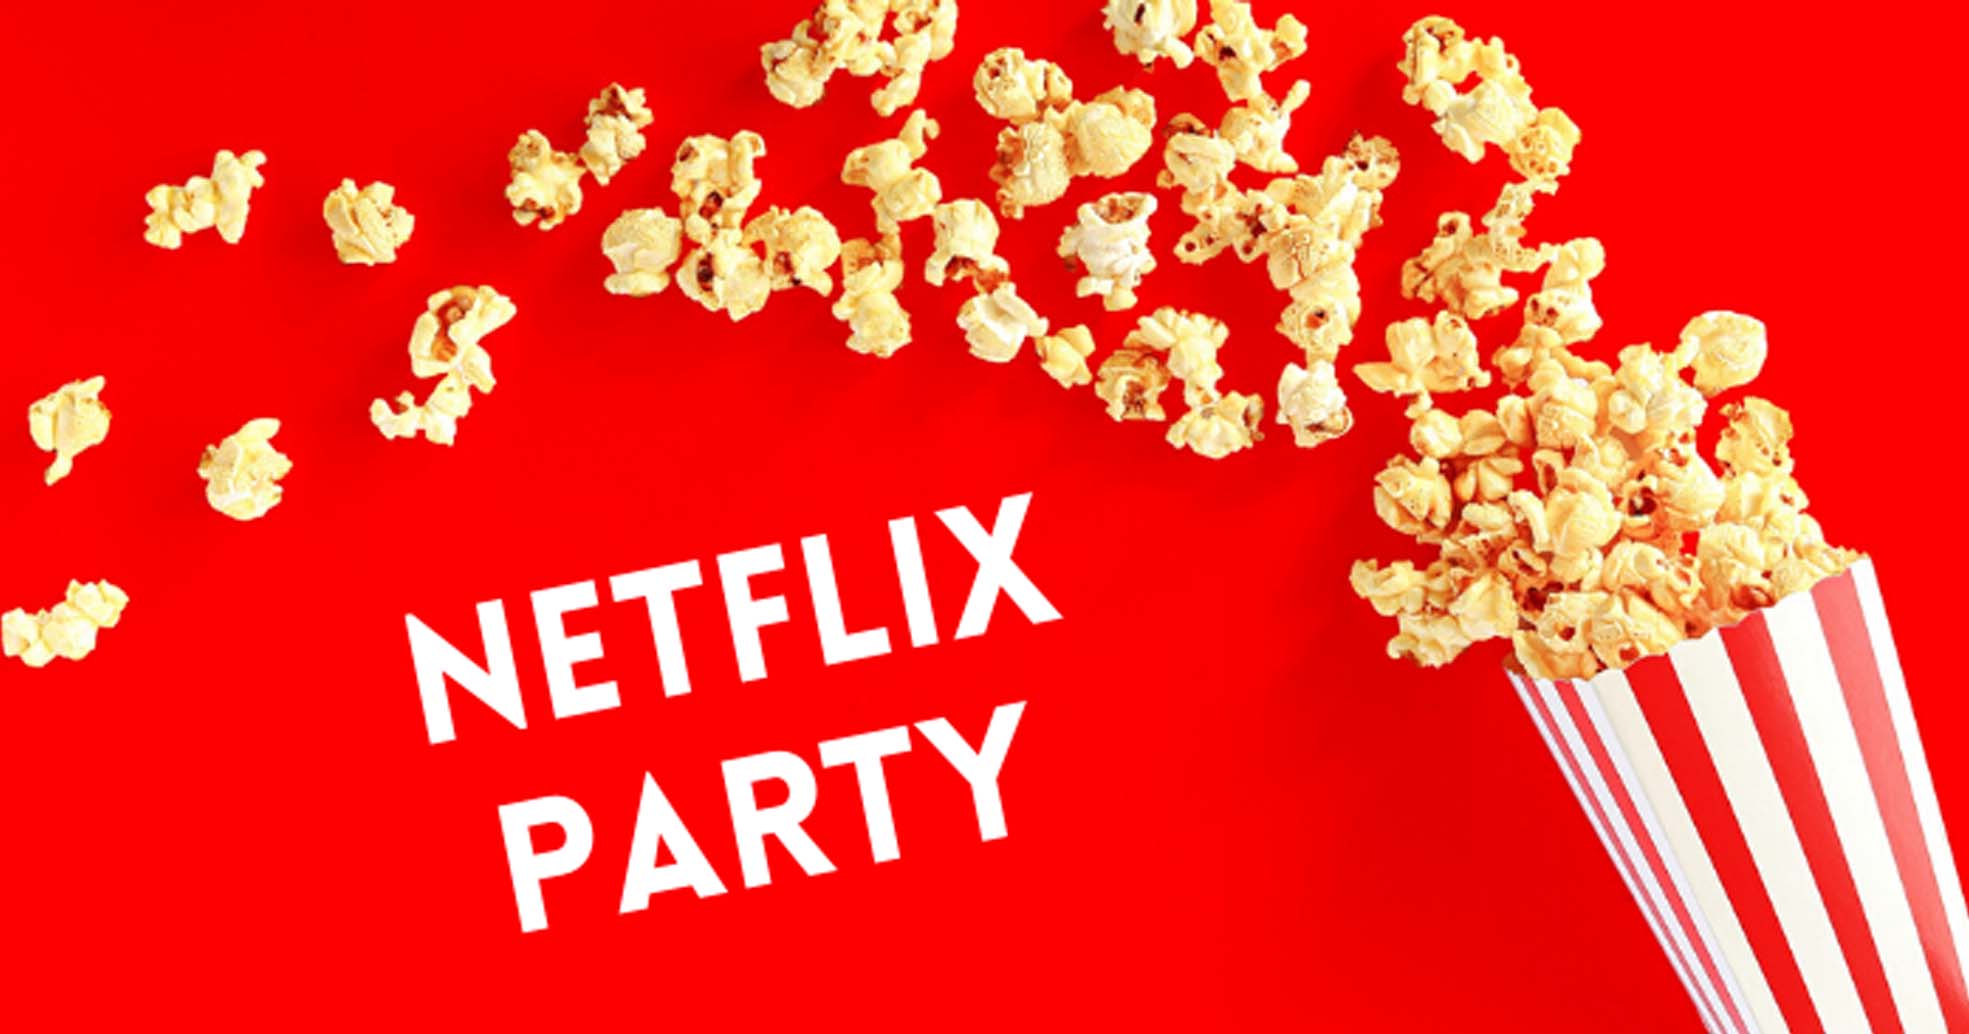 Netflix Party के ज़रिये आप अपने दोस्तों के साथ मुफ्त में देखें फिल्में और वेब सीरीज़